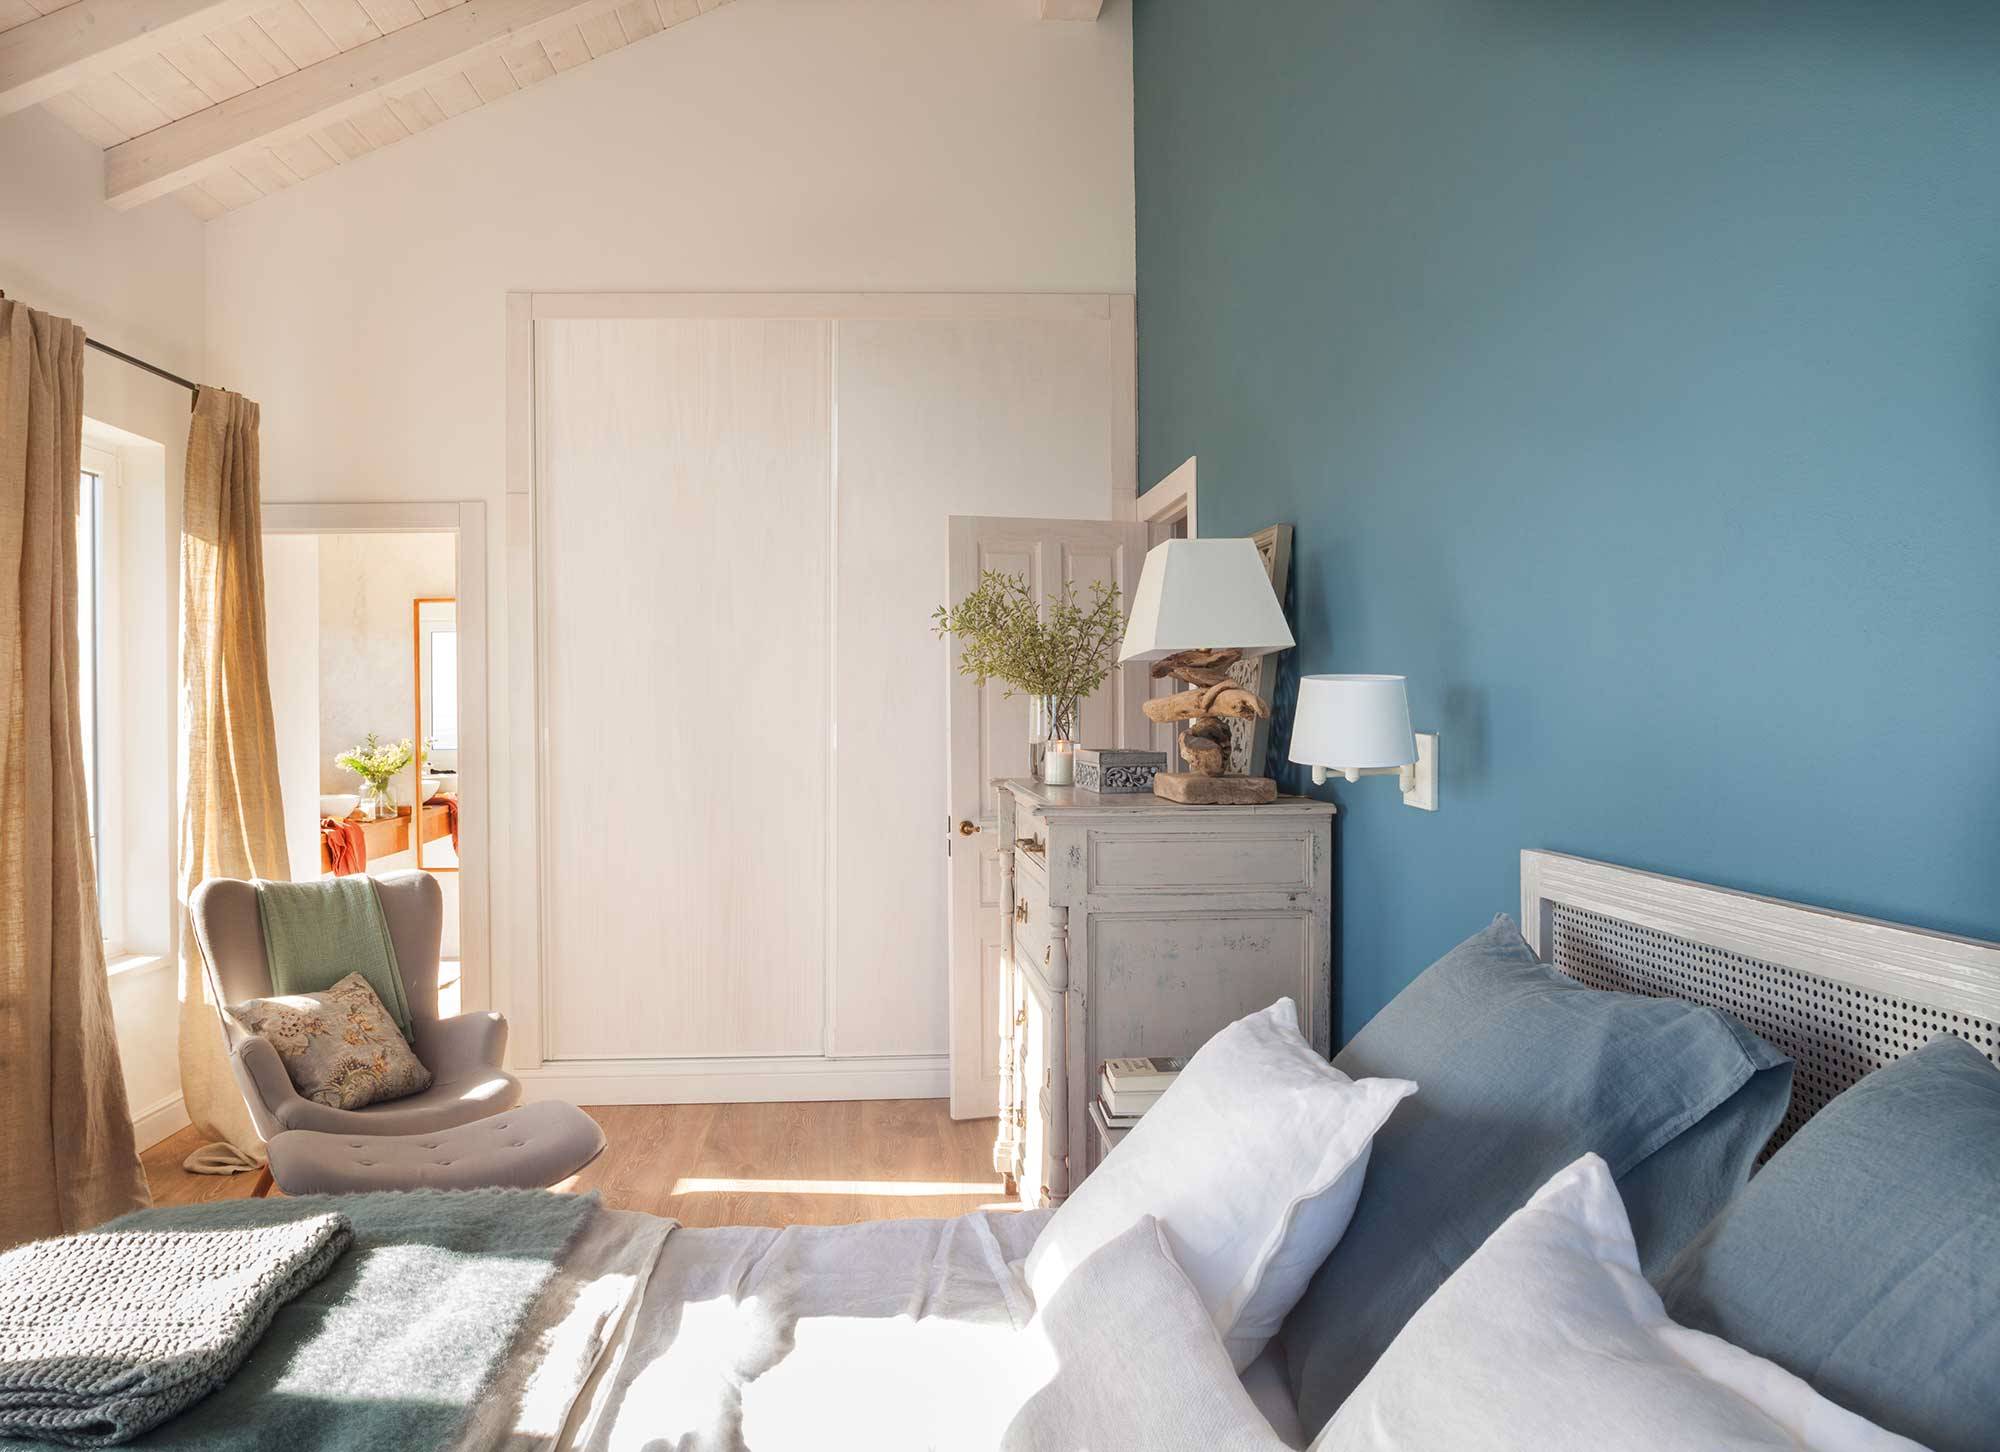 Dormitorio azul grisáceo con butaca y muebles antiguos.